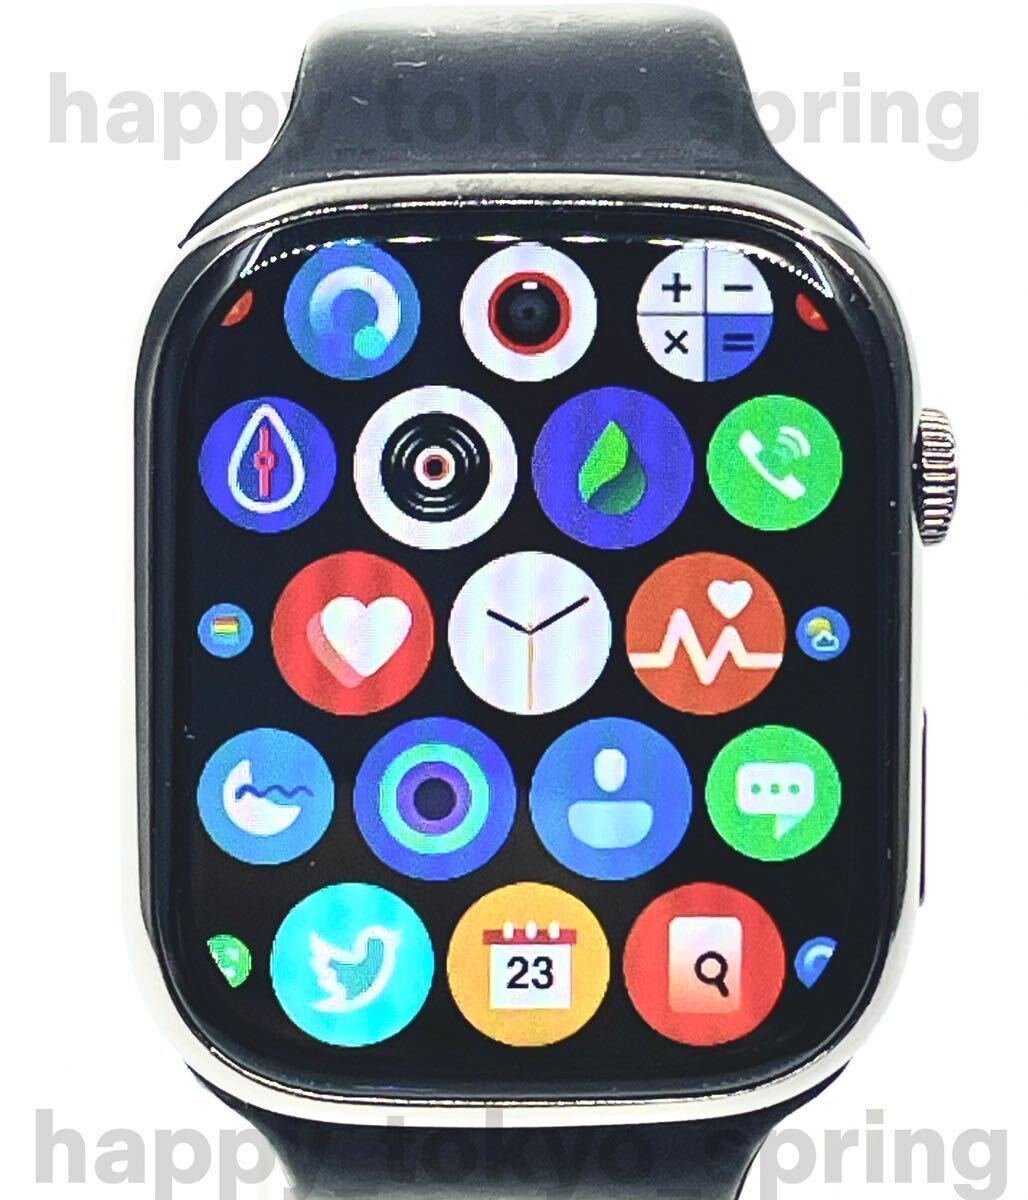  новый товар Apple Watch товар-заменитель 2.3 дюймовый большой экран смарт-часы музыка многофункциональный Watch9 здоровье спорт водонепроницаемый . средний кислород android кровяное давление iphone сон 